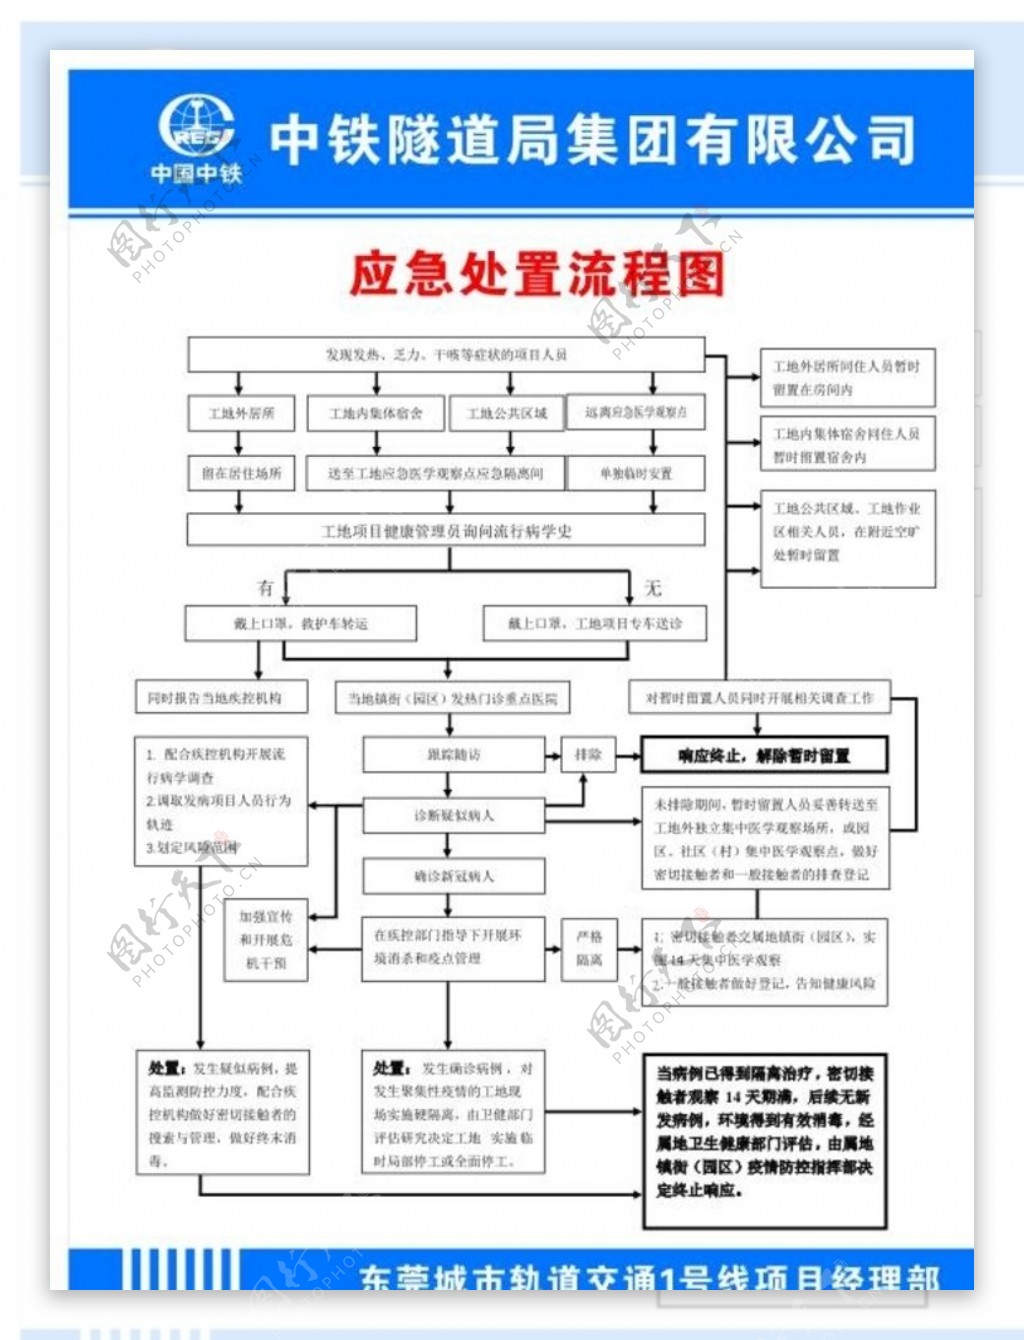 中国中铁防疫应急处置流程图